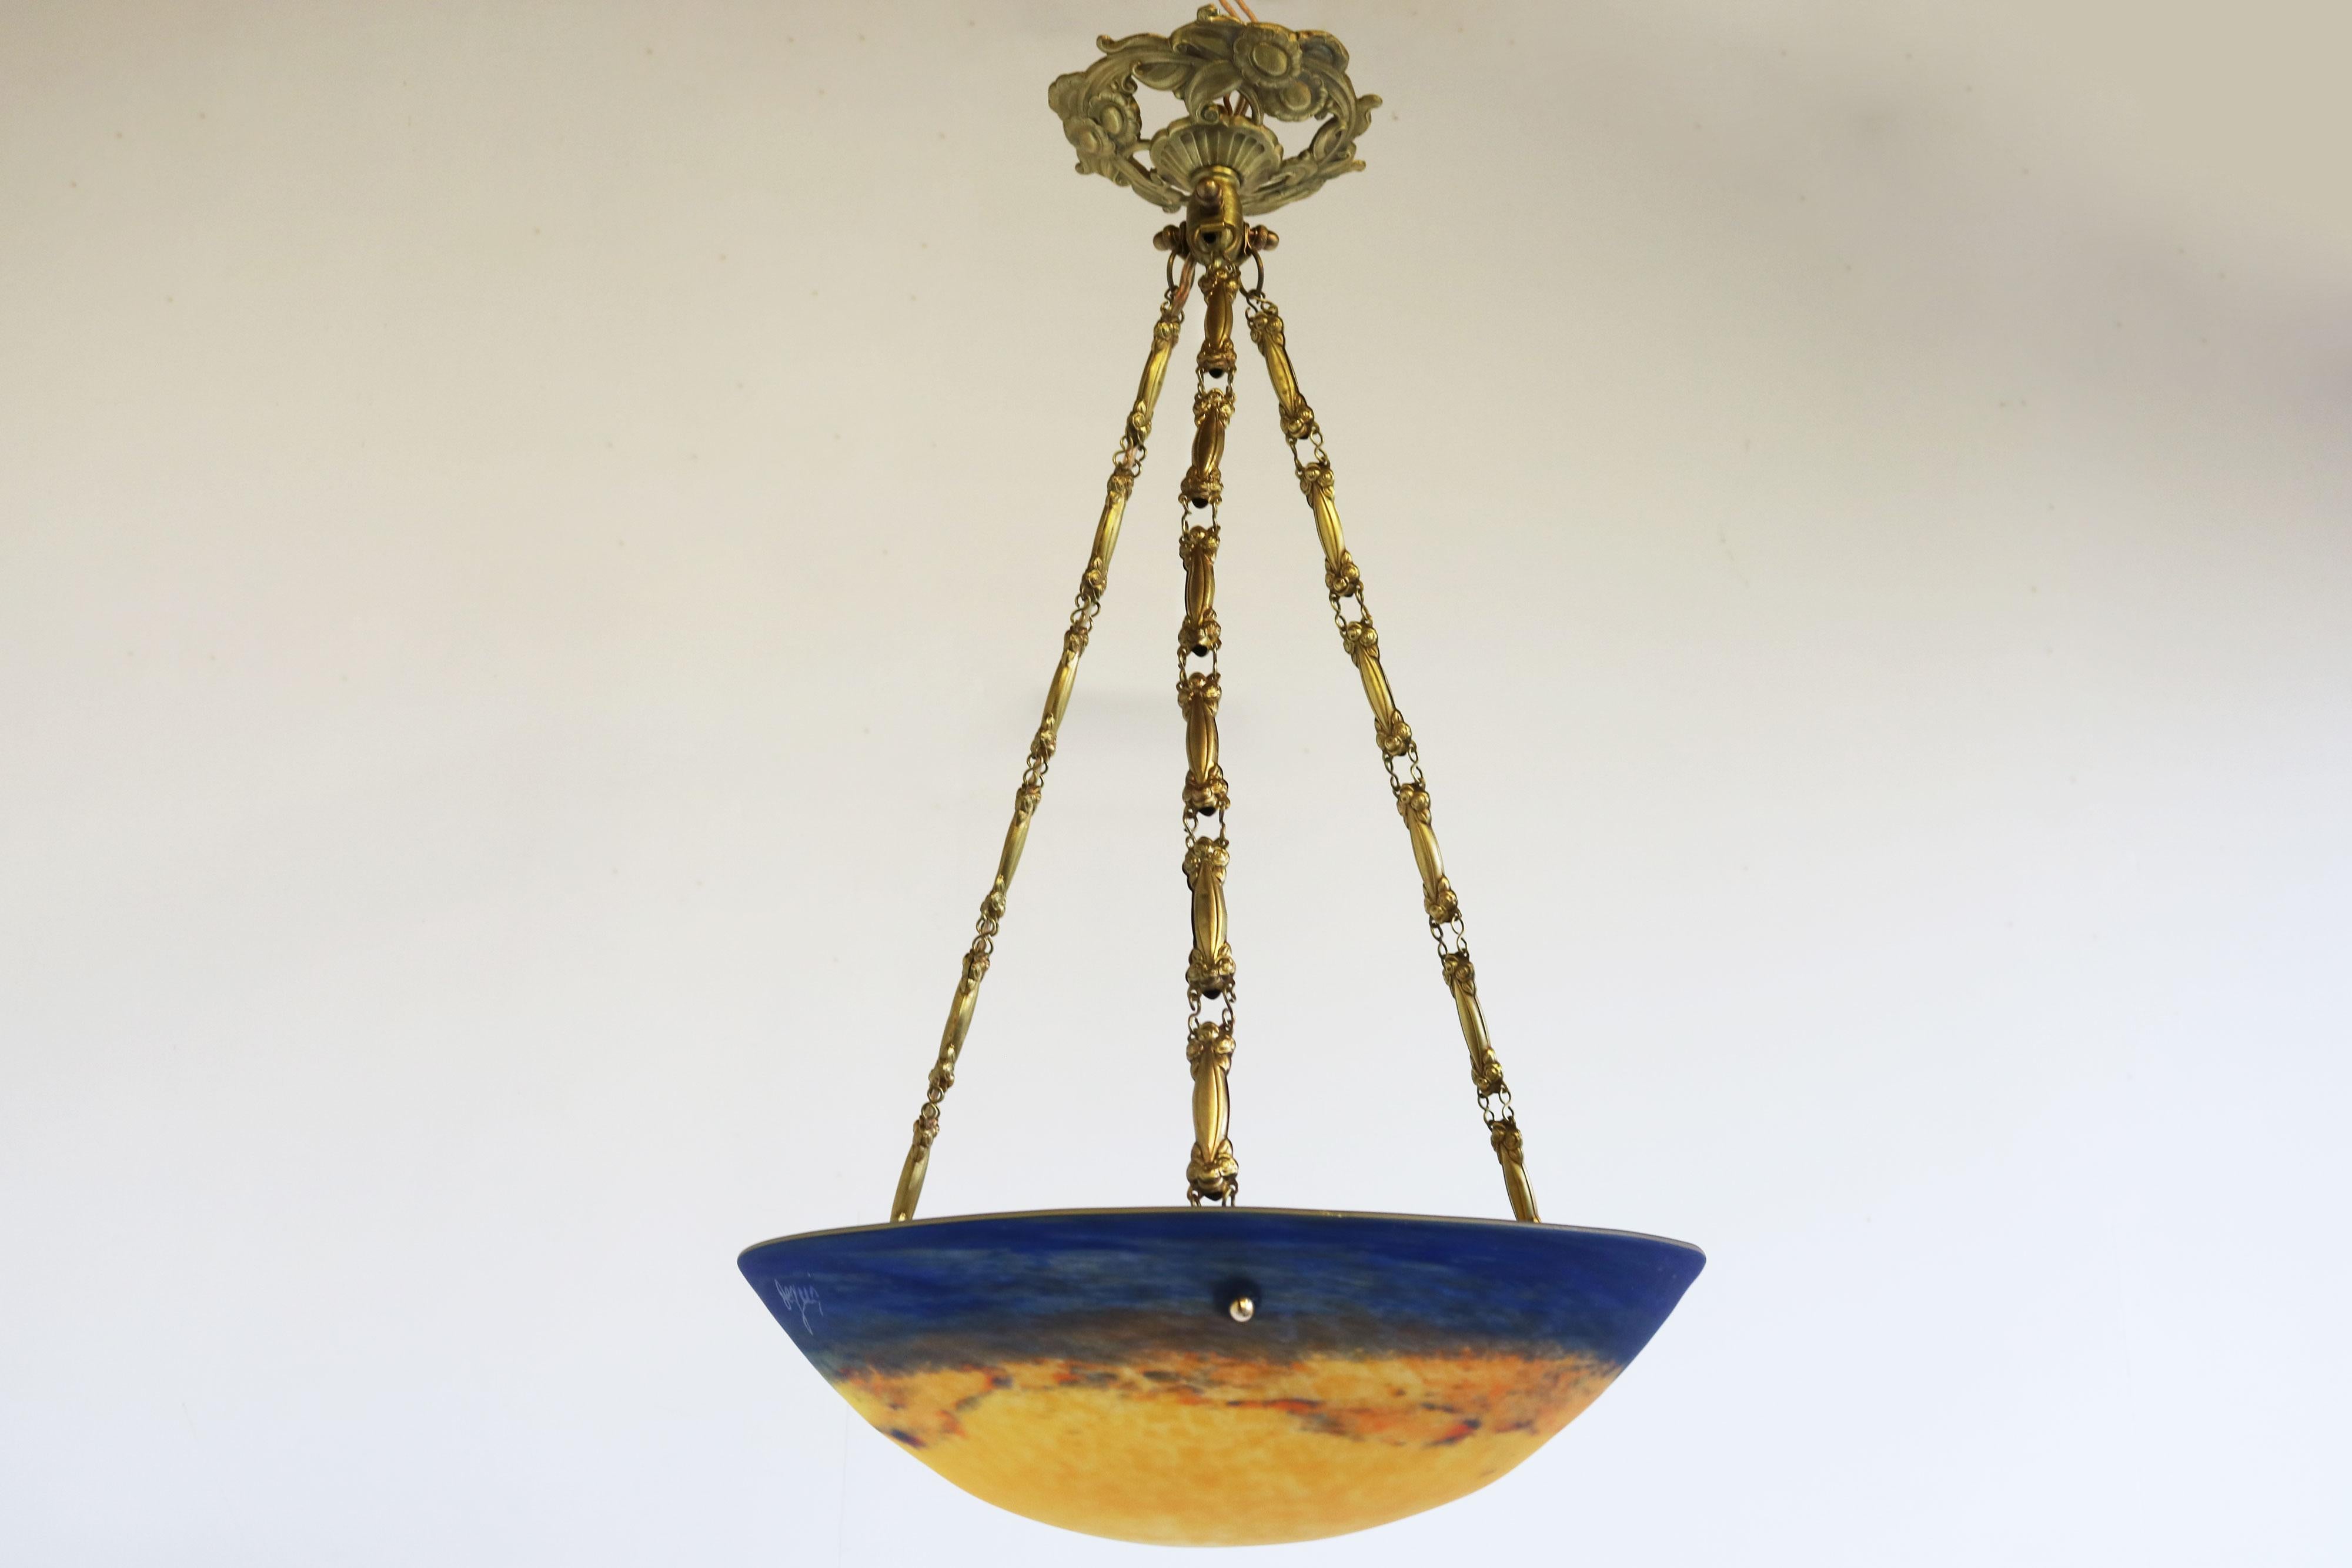 Gorgeous pate de verre degue chandelier antique French art nouveau bronze  For Sale 5